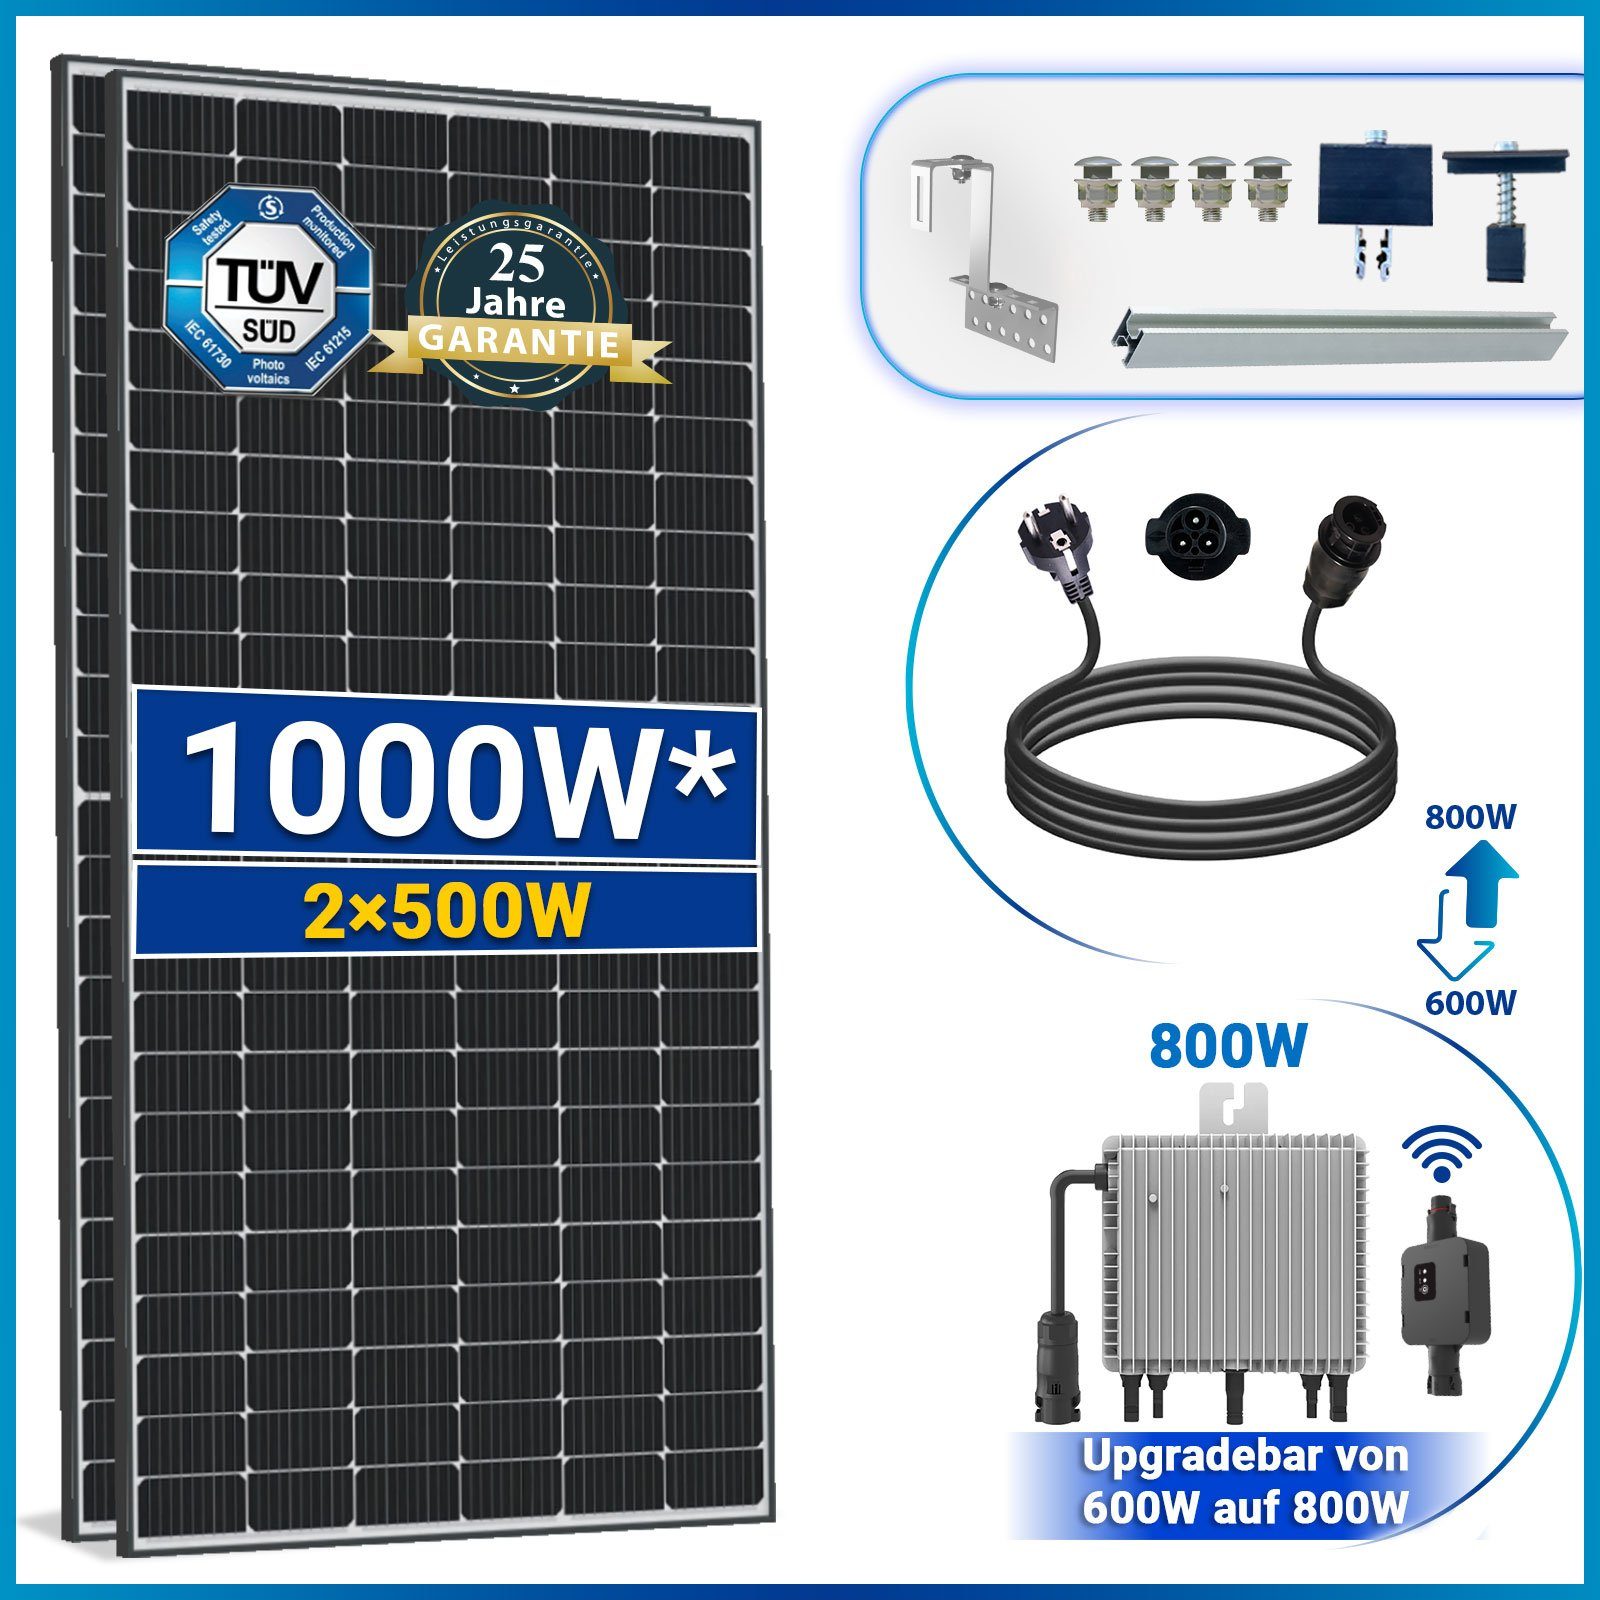 WIFI Relais 1000W Deye Wechselrichter 500W SOLAR-HOOK 10M 800W Neu Balkonkraftwerk mit Schuckostecker Generation PV-Montage, Komplettset Solaranlage und etm inkl. Ziegeldach Solarmodule,